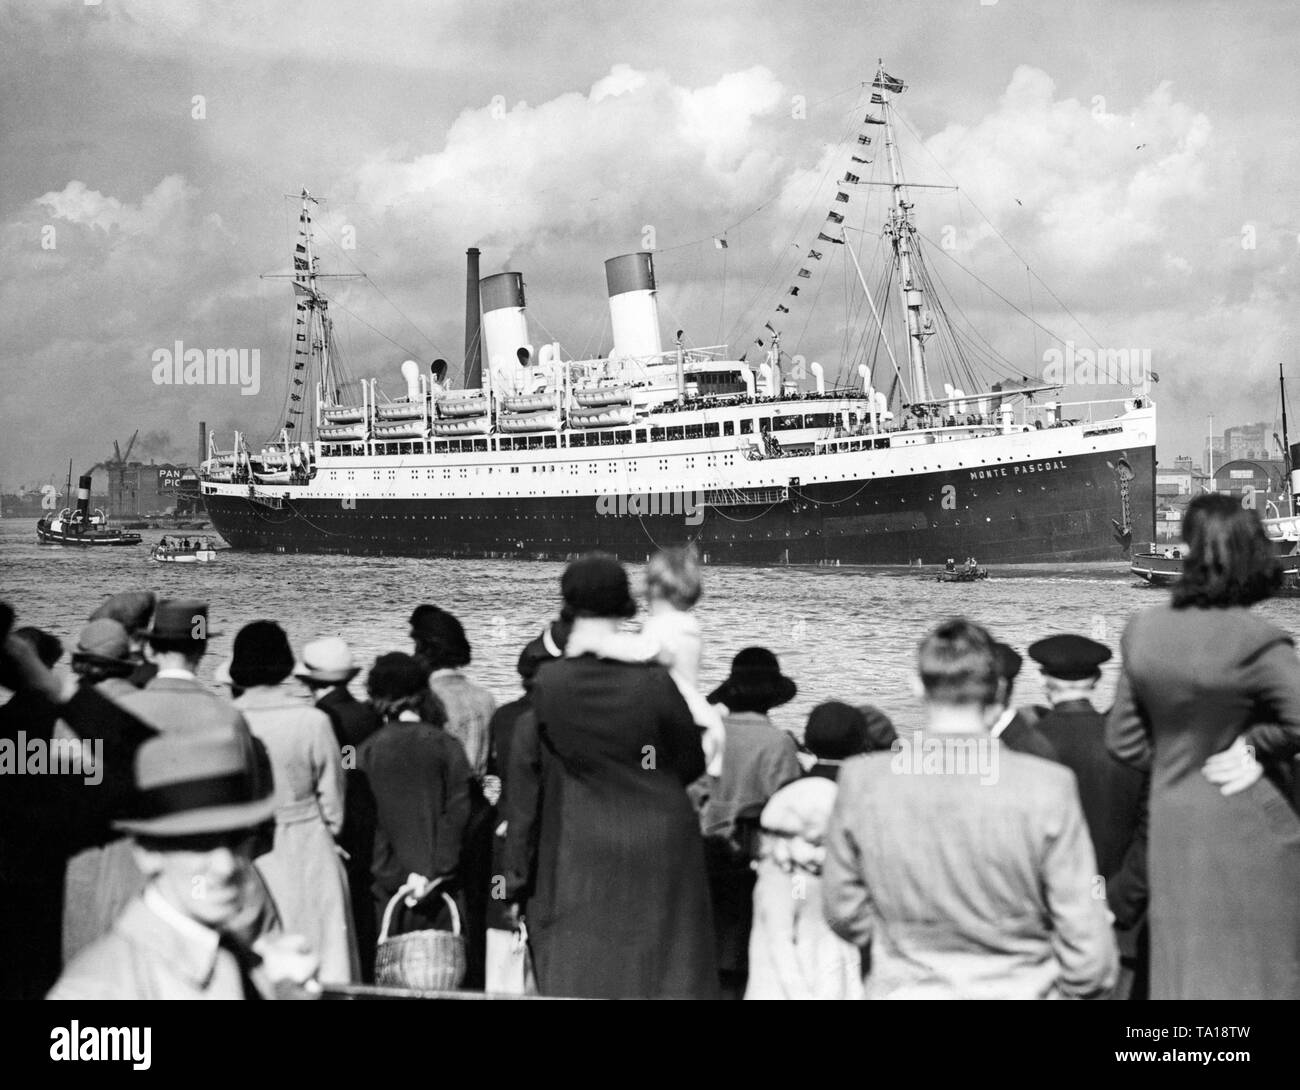 800 Deutsche Veteranen erreichen den Hafen von Greenwich an Bord des Dampfschiffes "Monte Pascoal" der Reederei Hamburg Süd, wo Sie durch den Herzog von Sachsen-Coburg-Gotha empfangen wurden. Stockfoto